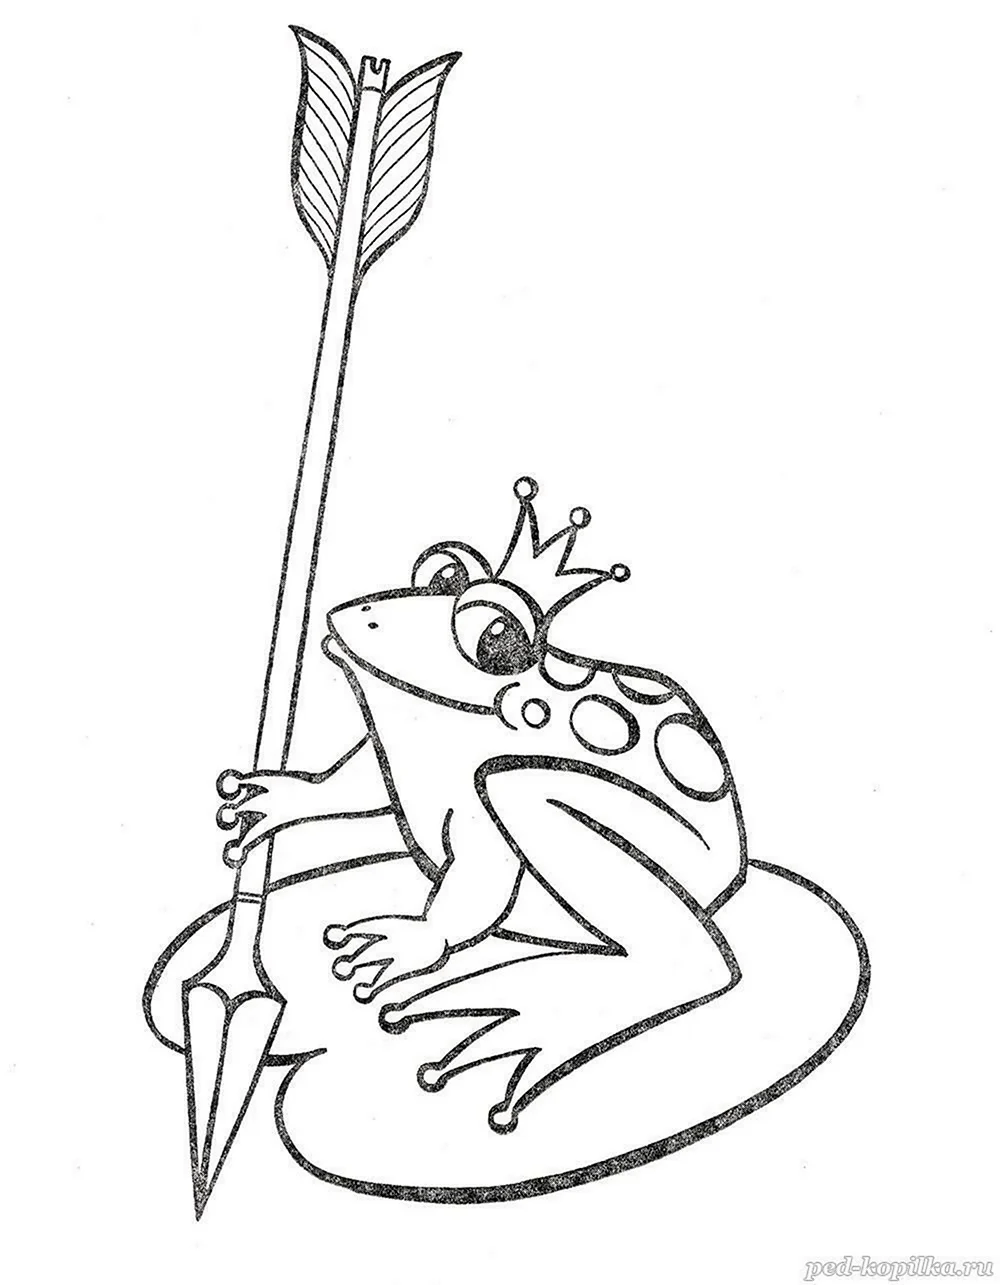 Нарисовать иллюстрацию к сказке Царевна лягушка